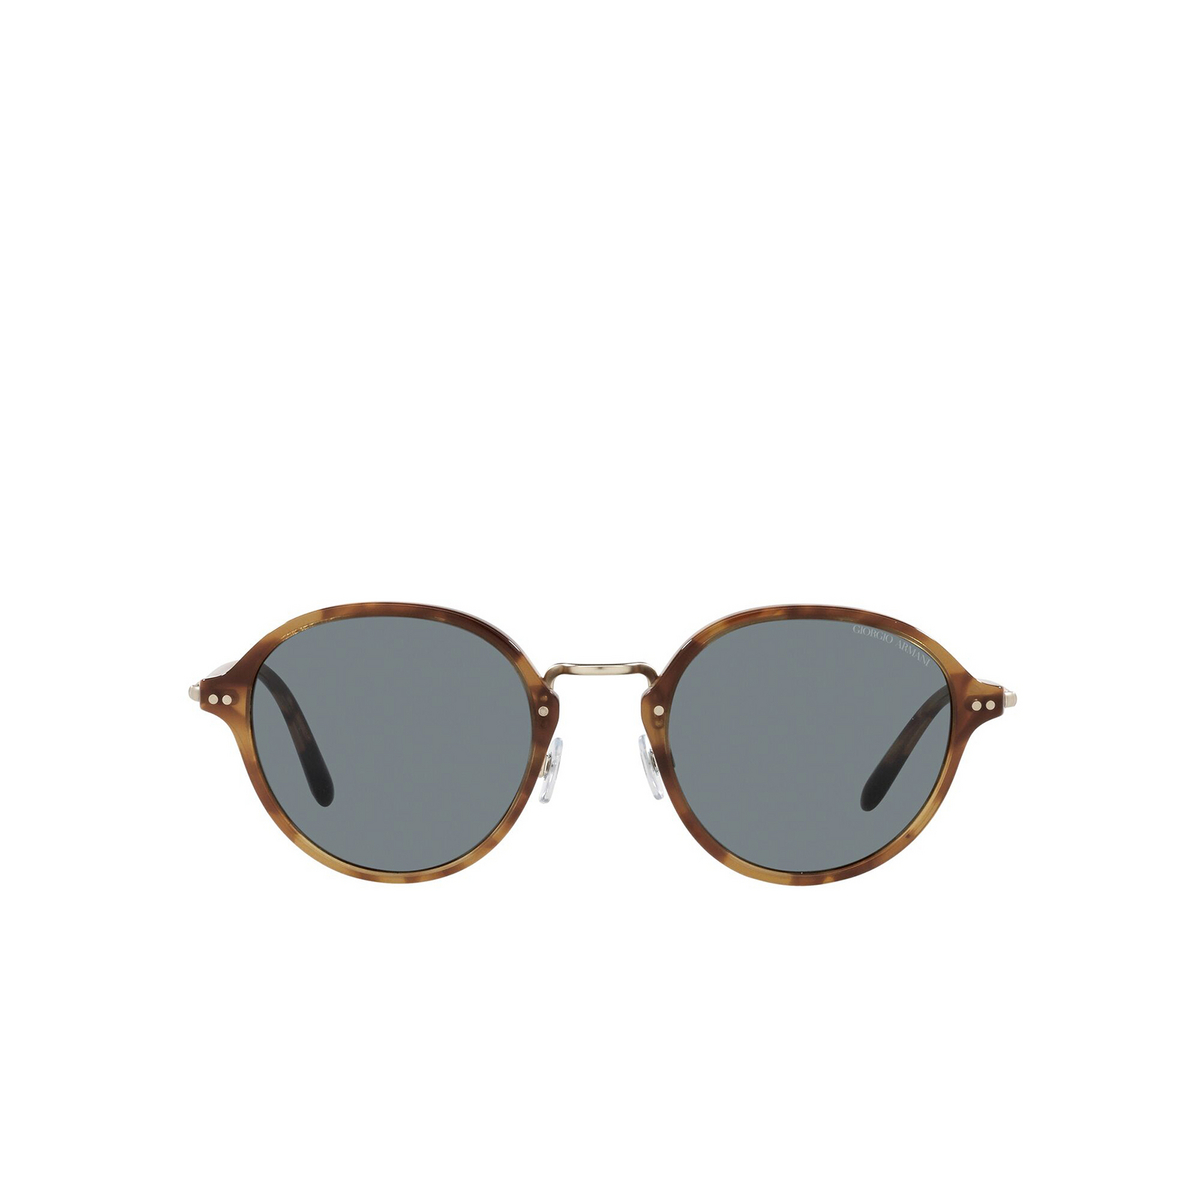 Giorgio Armani® Square Sunglasses: AR8139 color Brown Tortoise 5762R5 - front view.